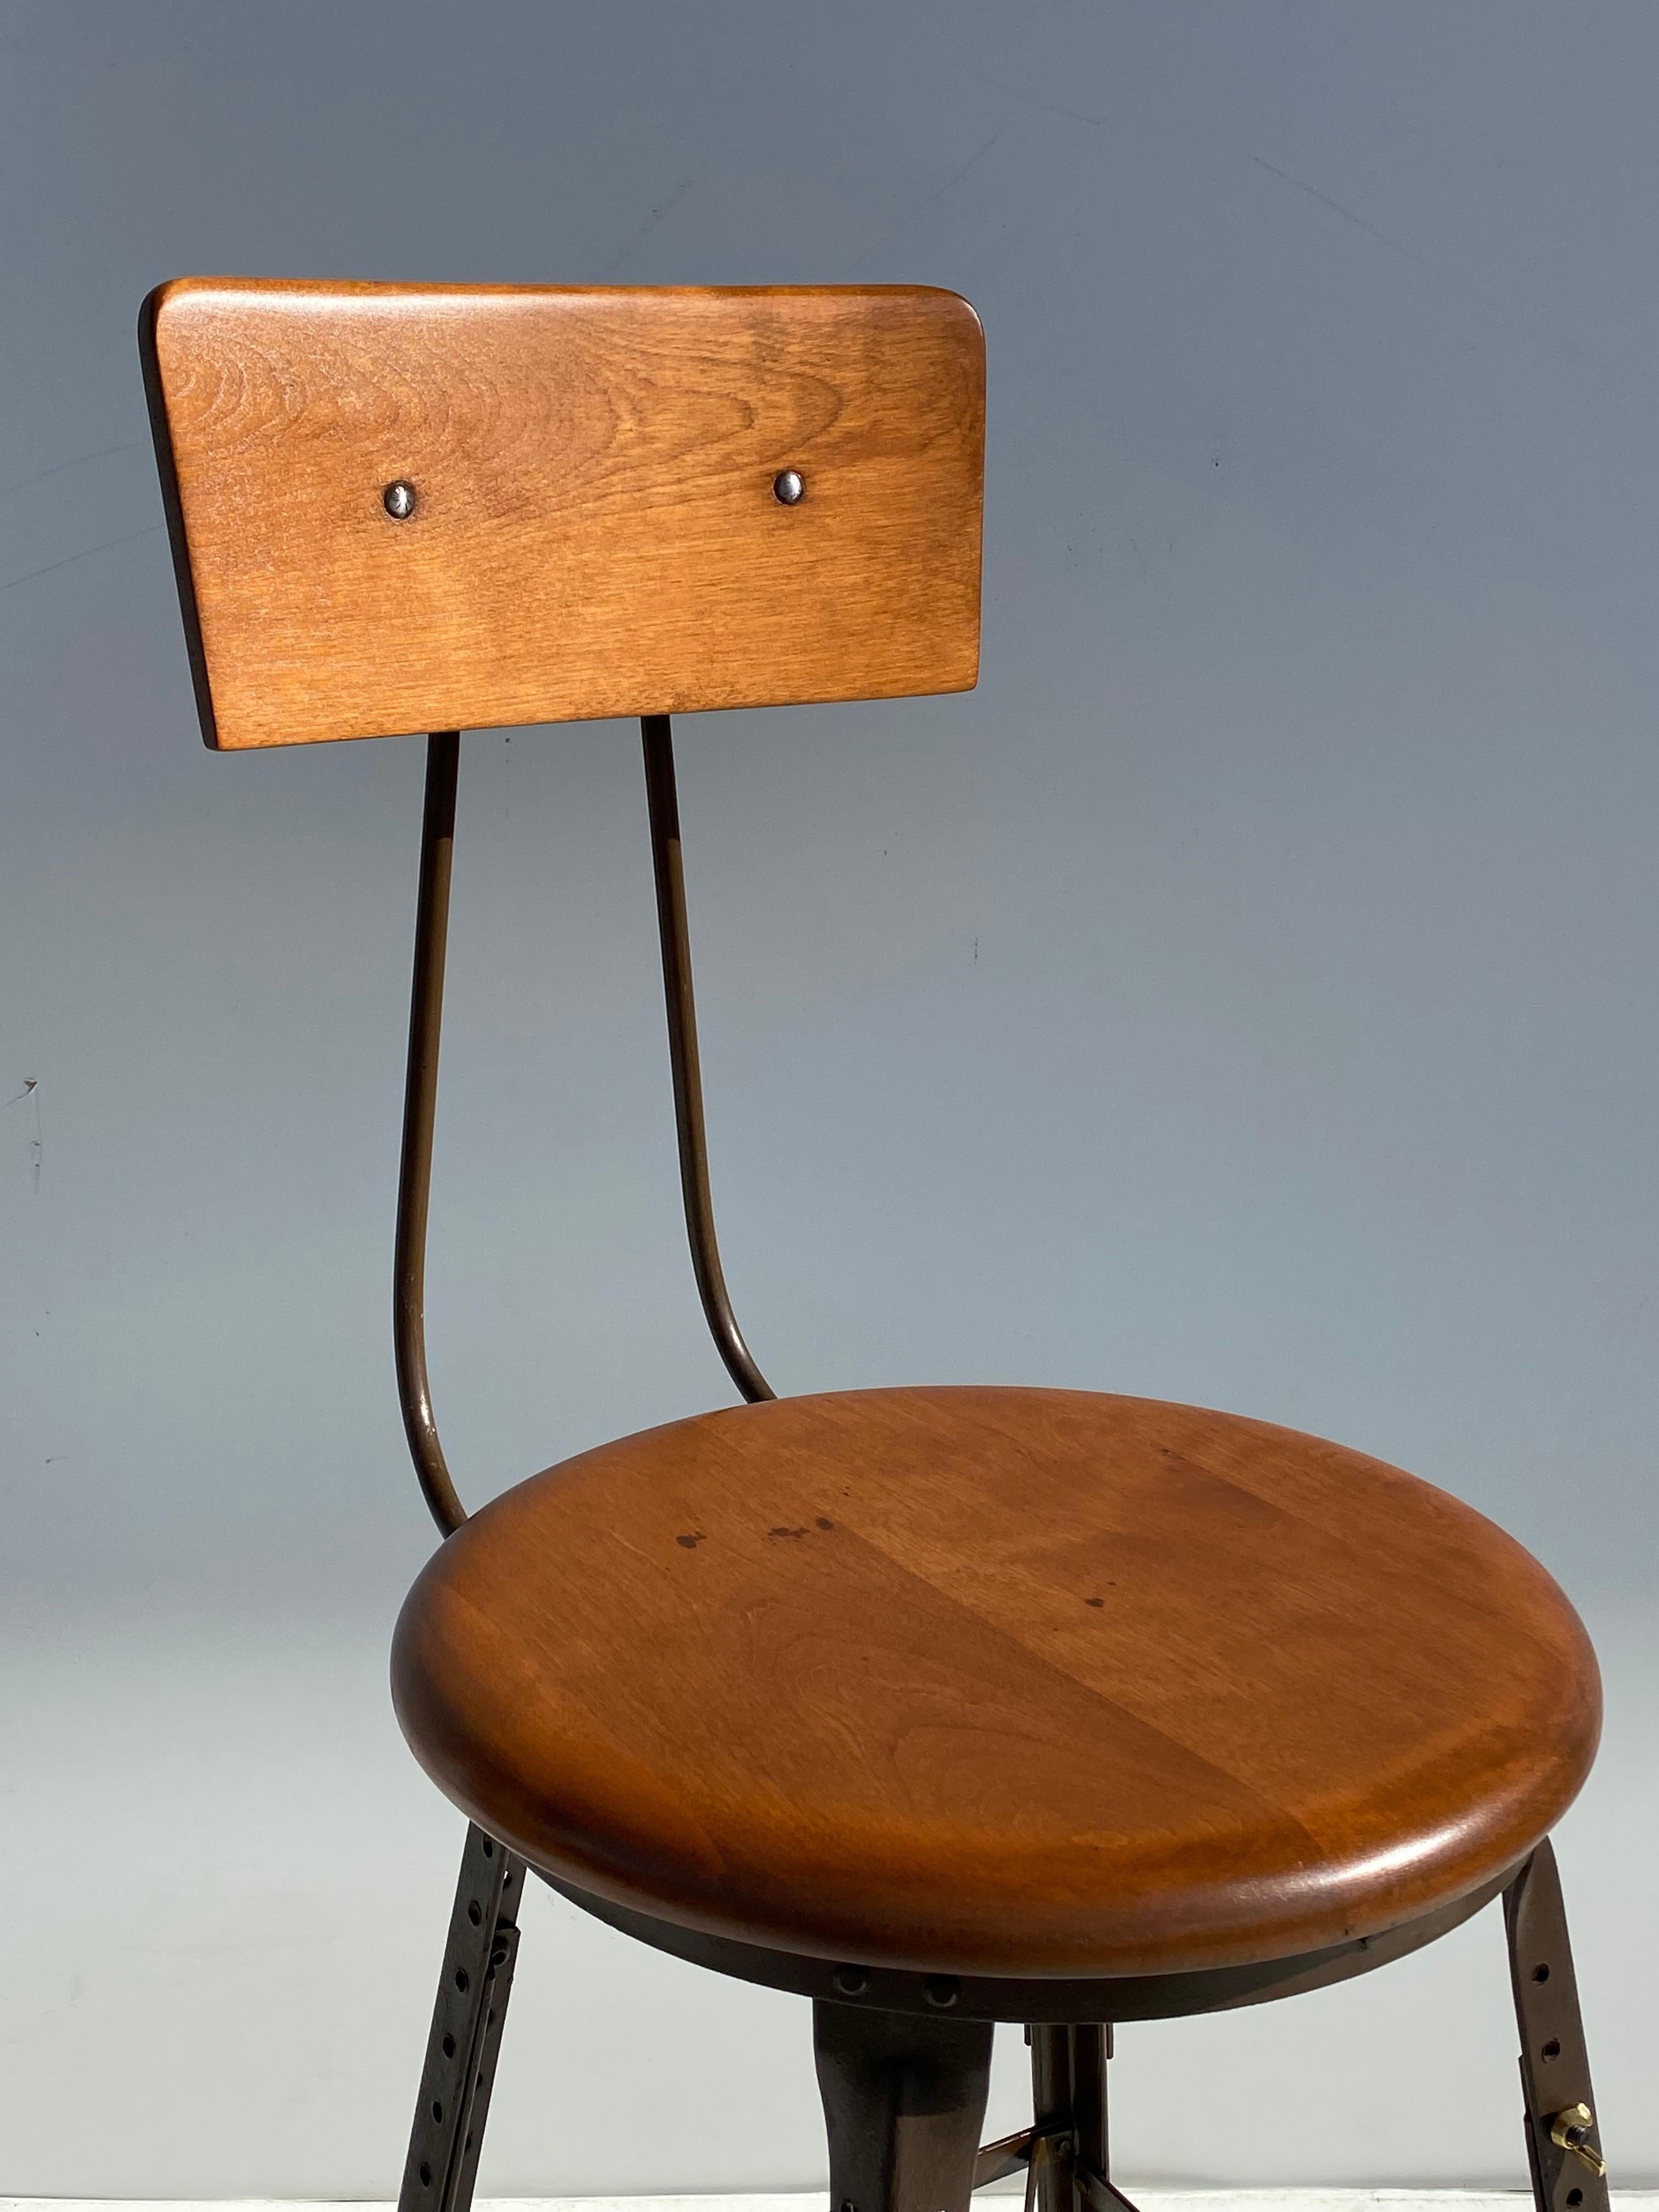 artist stool adjustable